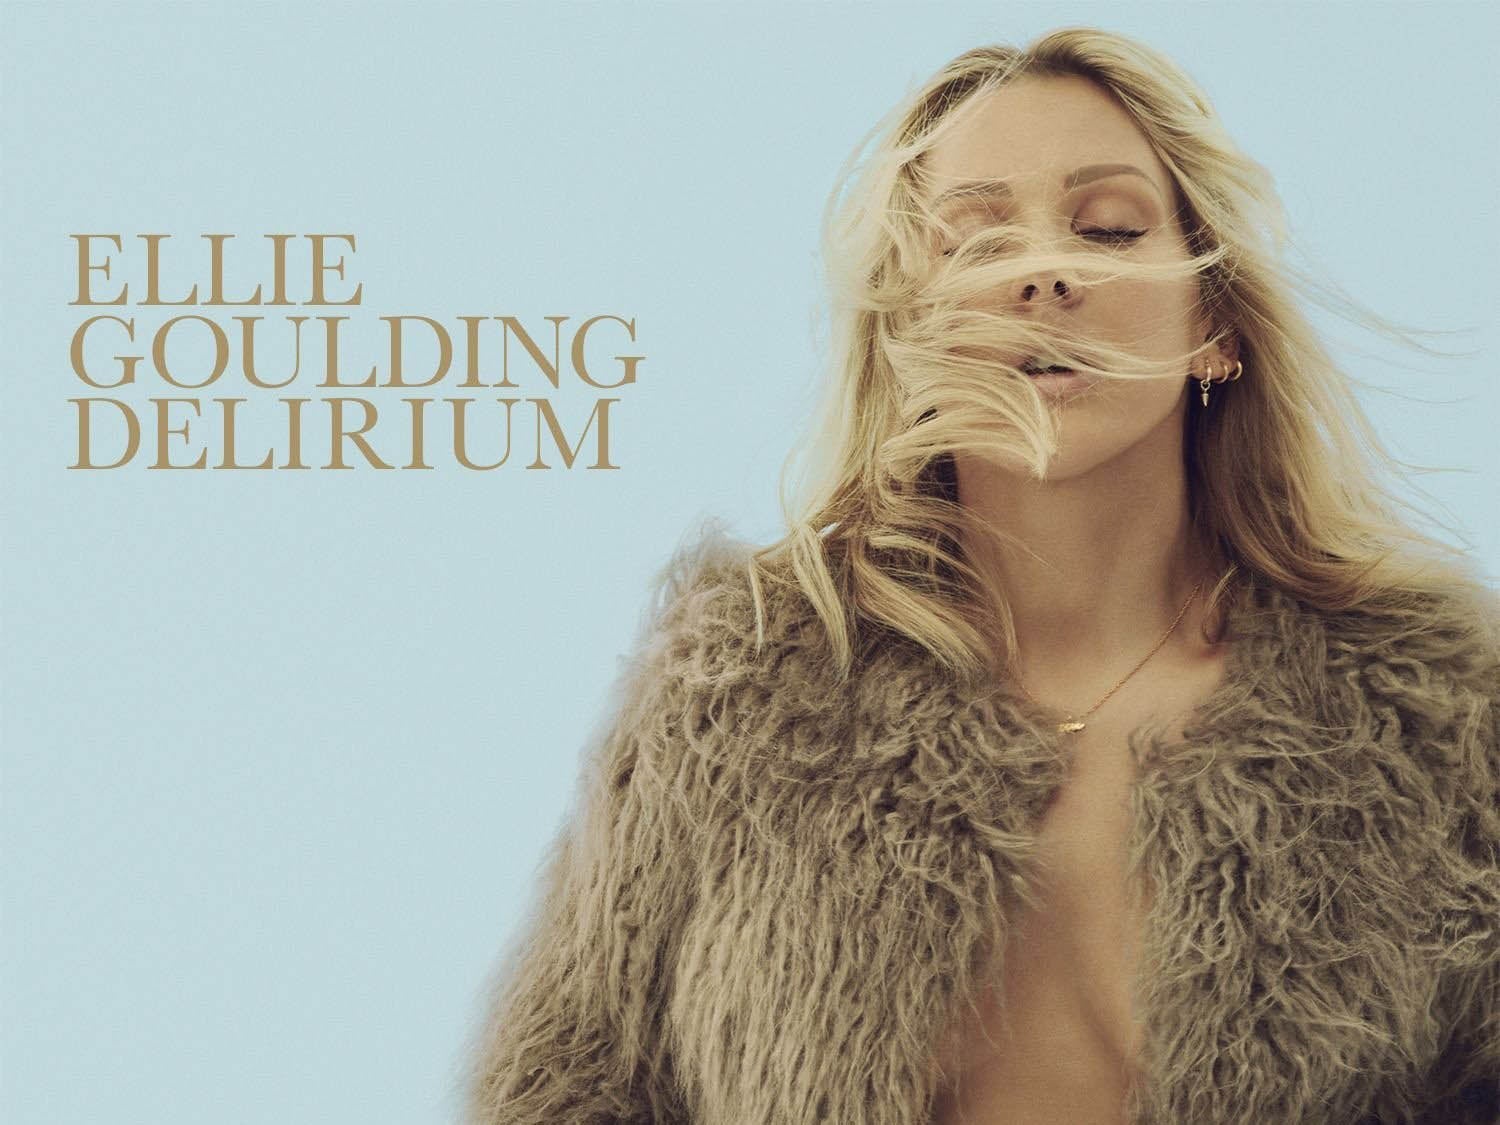 Delirium ellie goulding album songs - grelogic